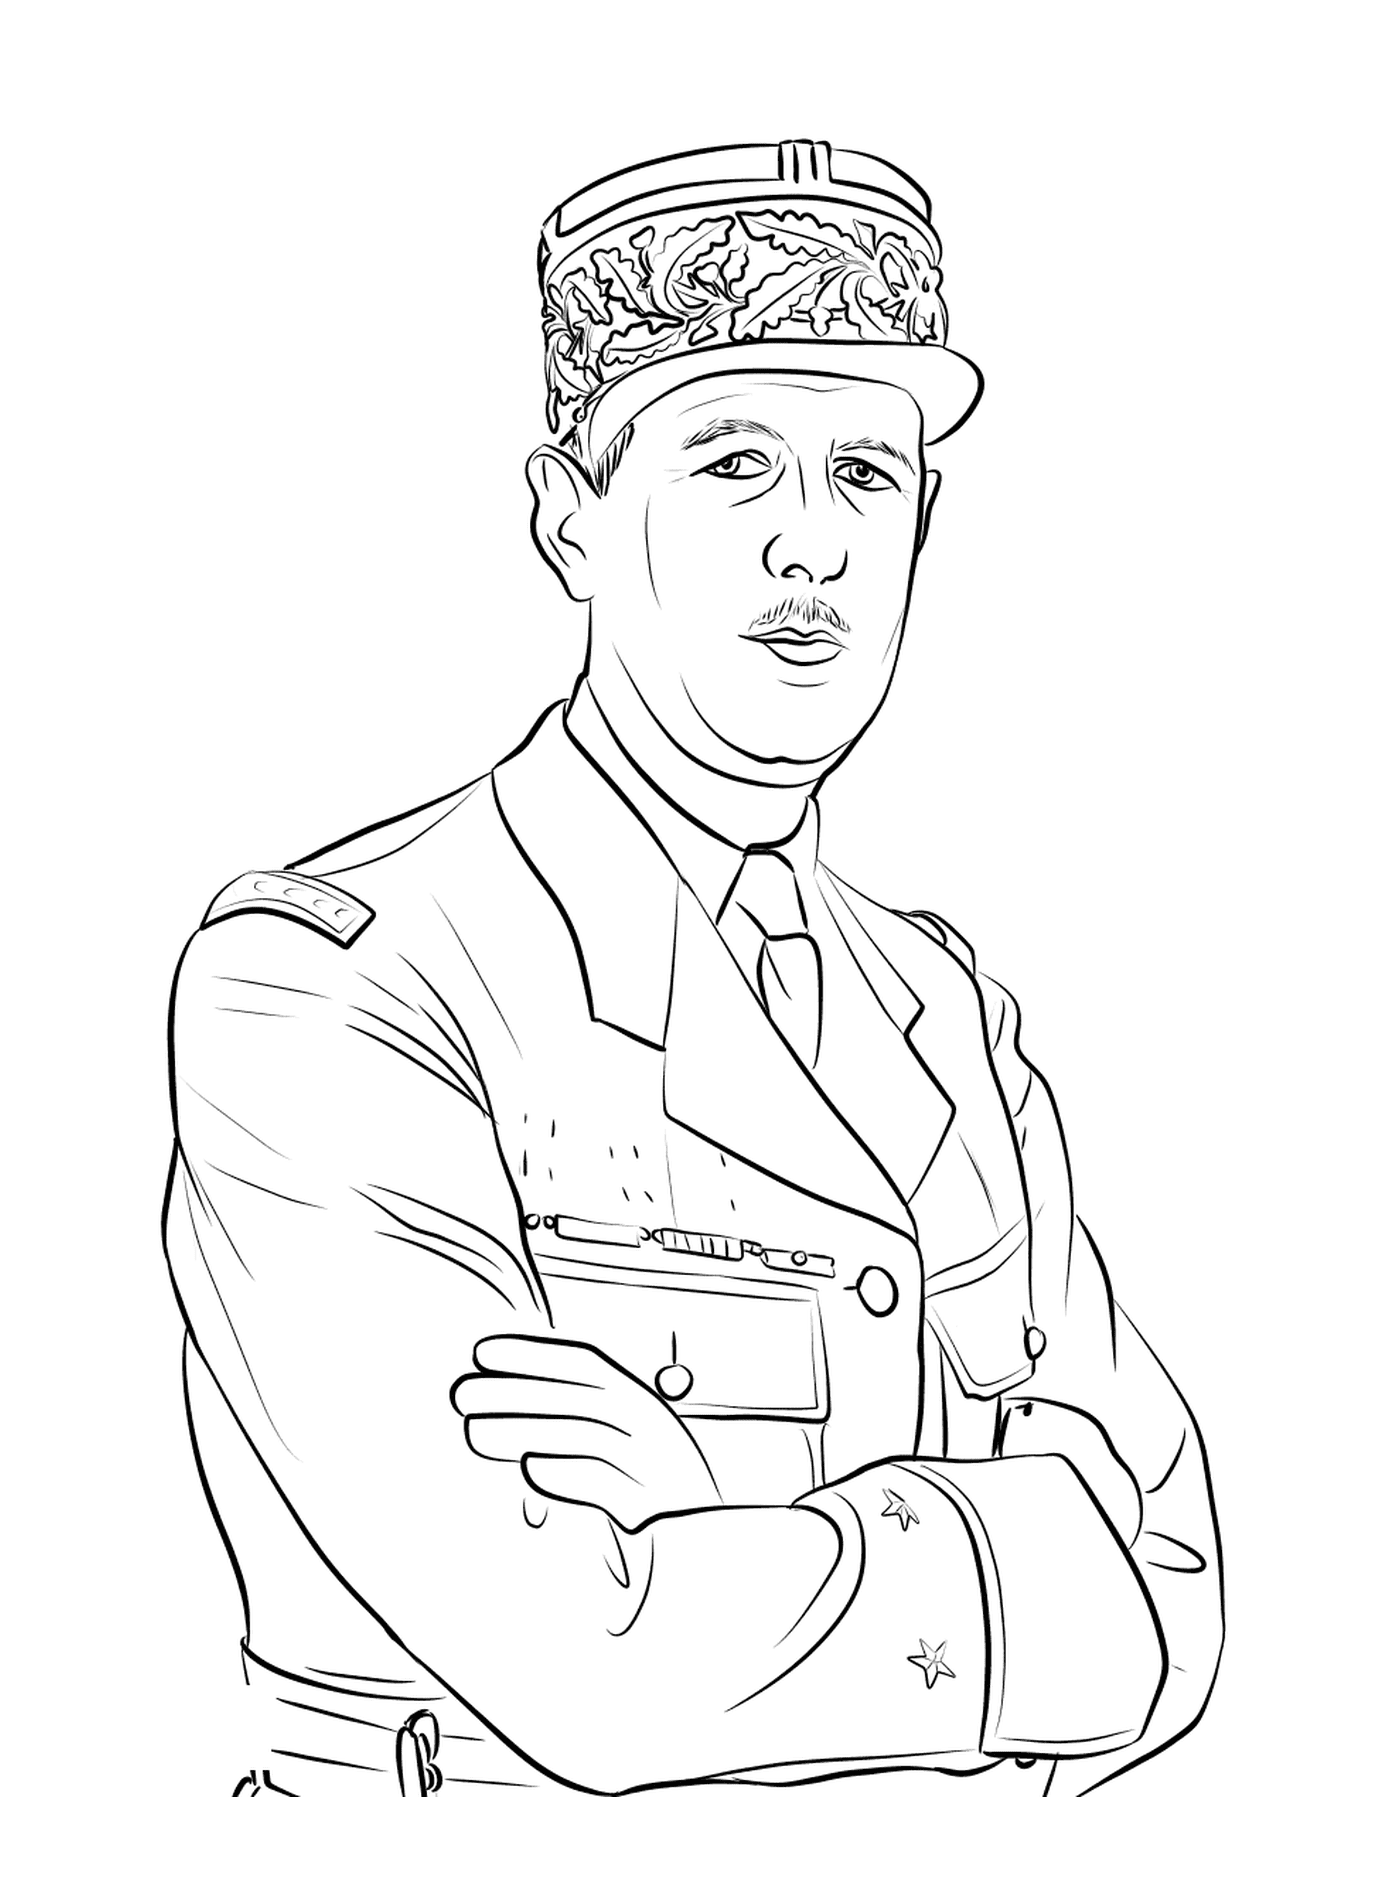  Charles de Gaulle, líder militar 